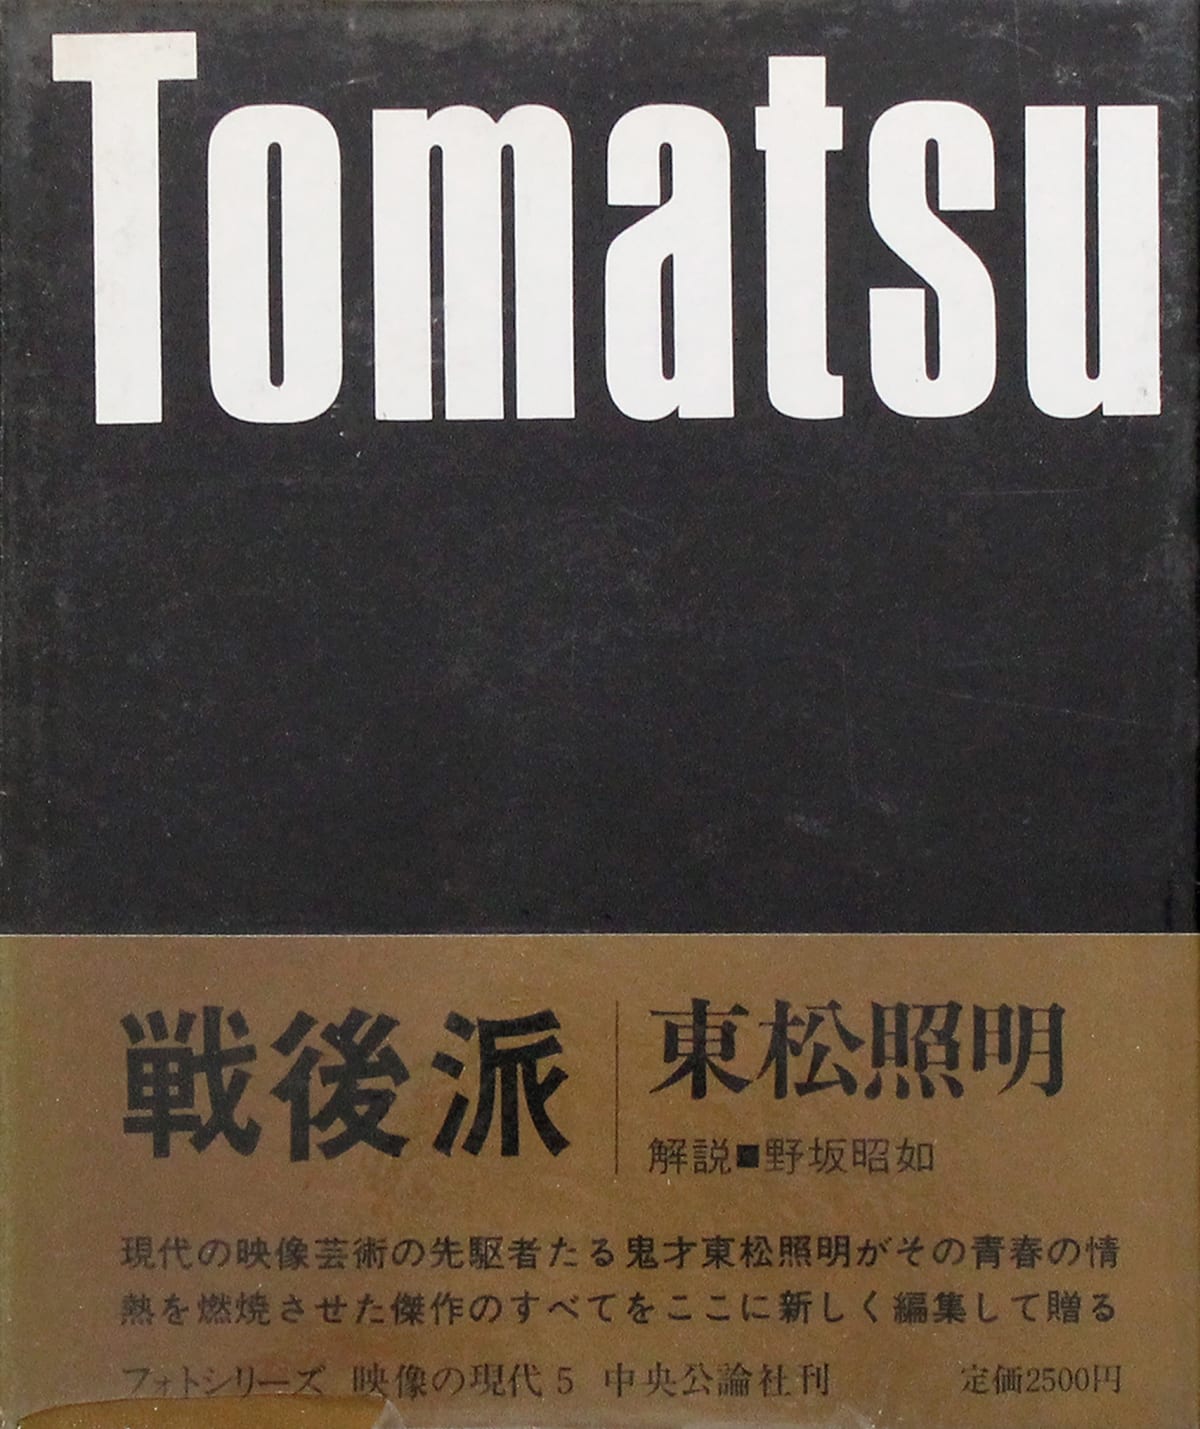 Shomei Tomatsu